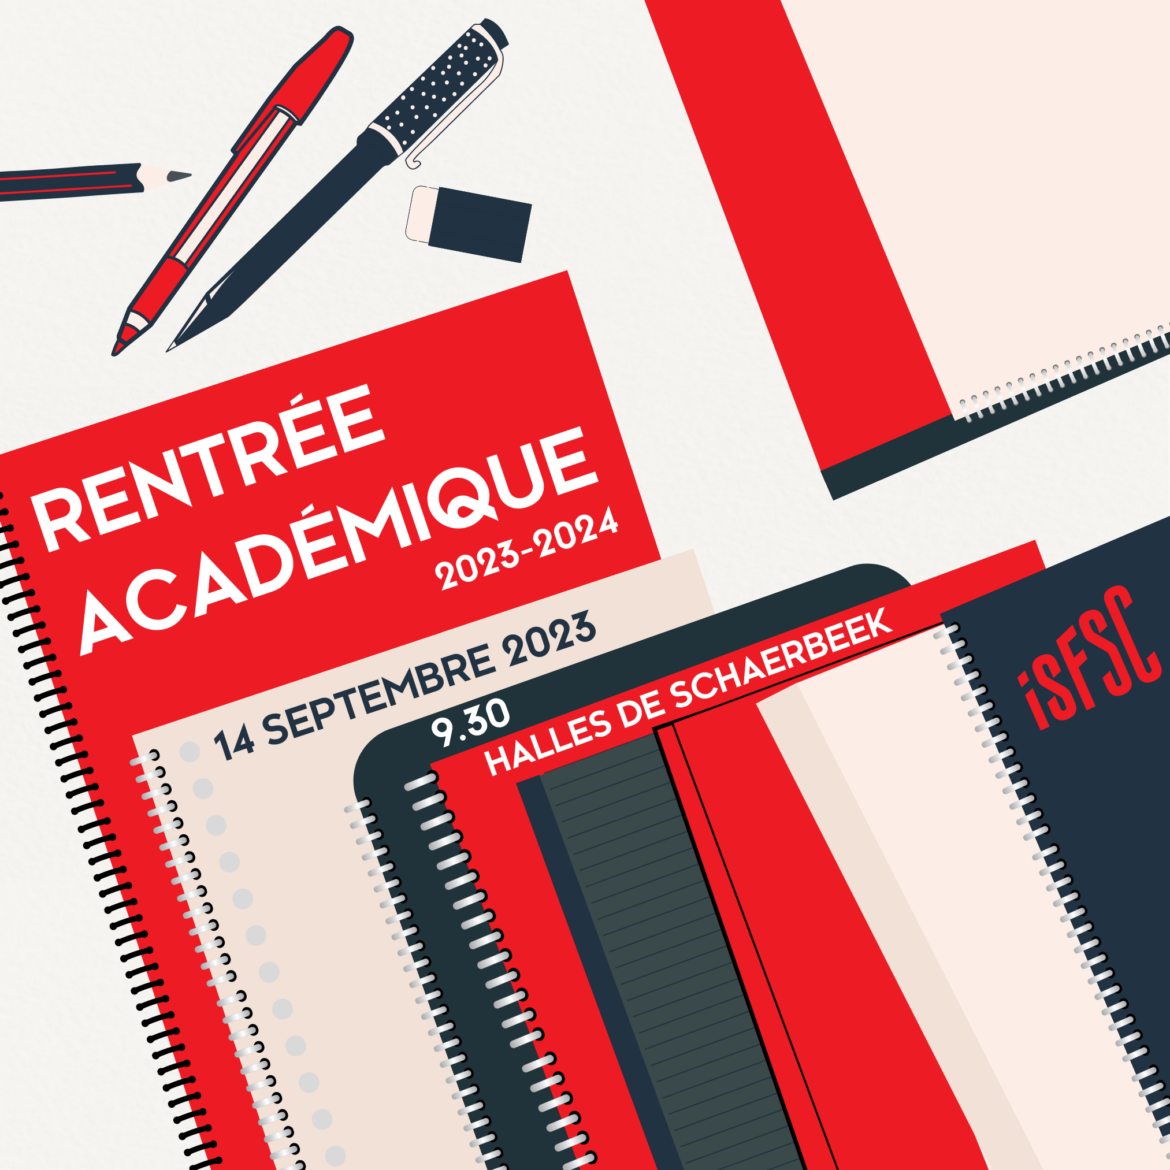 Rentree-academique-2023-2024-1.png